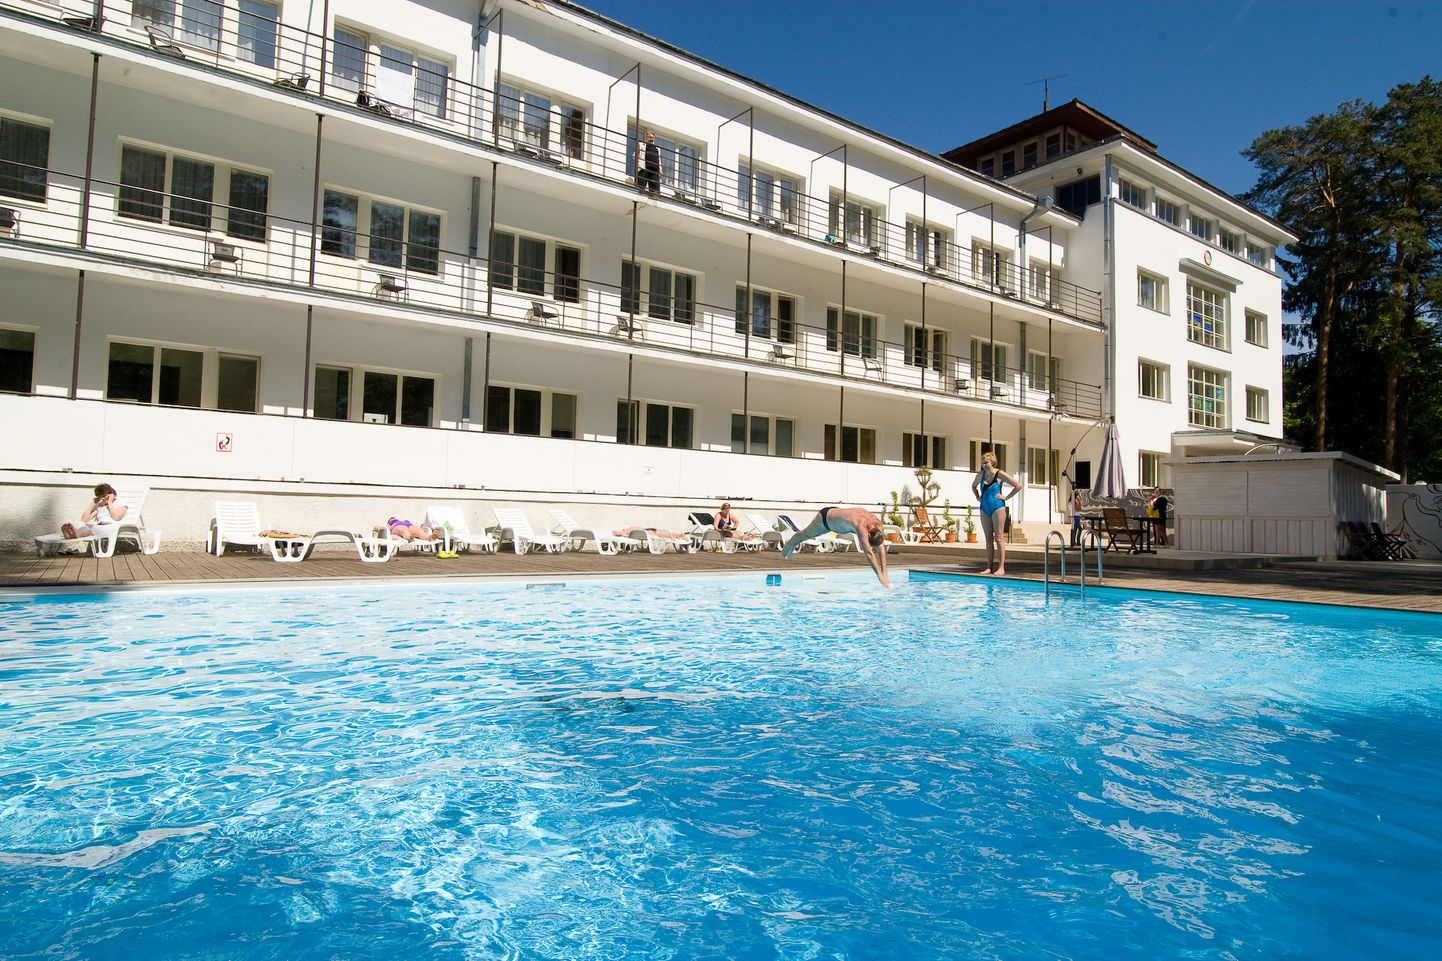 В санатории "Narva-Jõesuu" расположен крупнейший в Эстонии обогреваемый открытый бассейн.